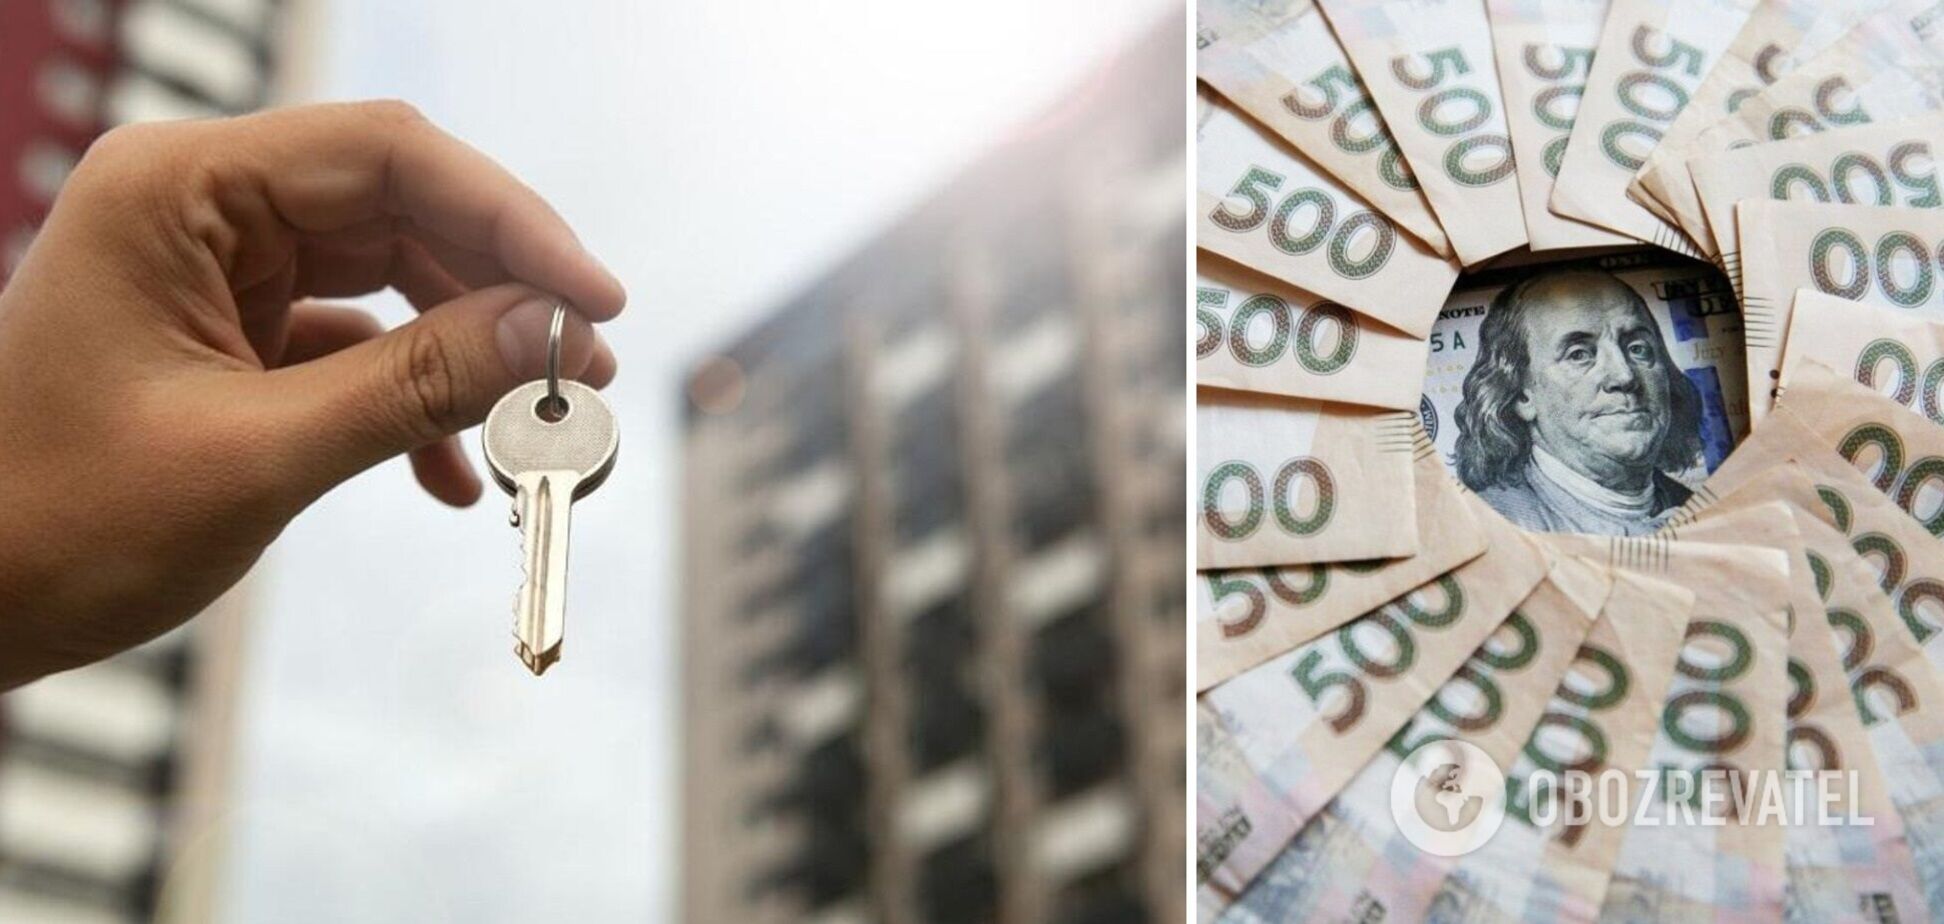 Аби купити однокімнатну квартиру, українцям доведеться жити у режимі жорсткої економії 5-8 років